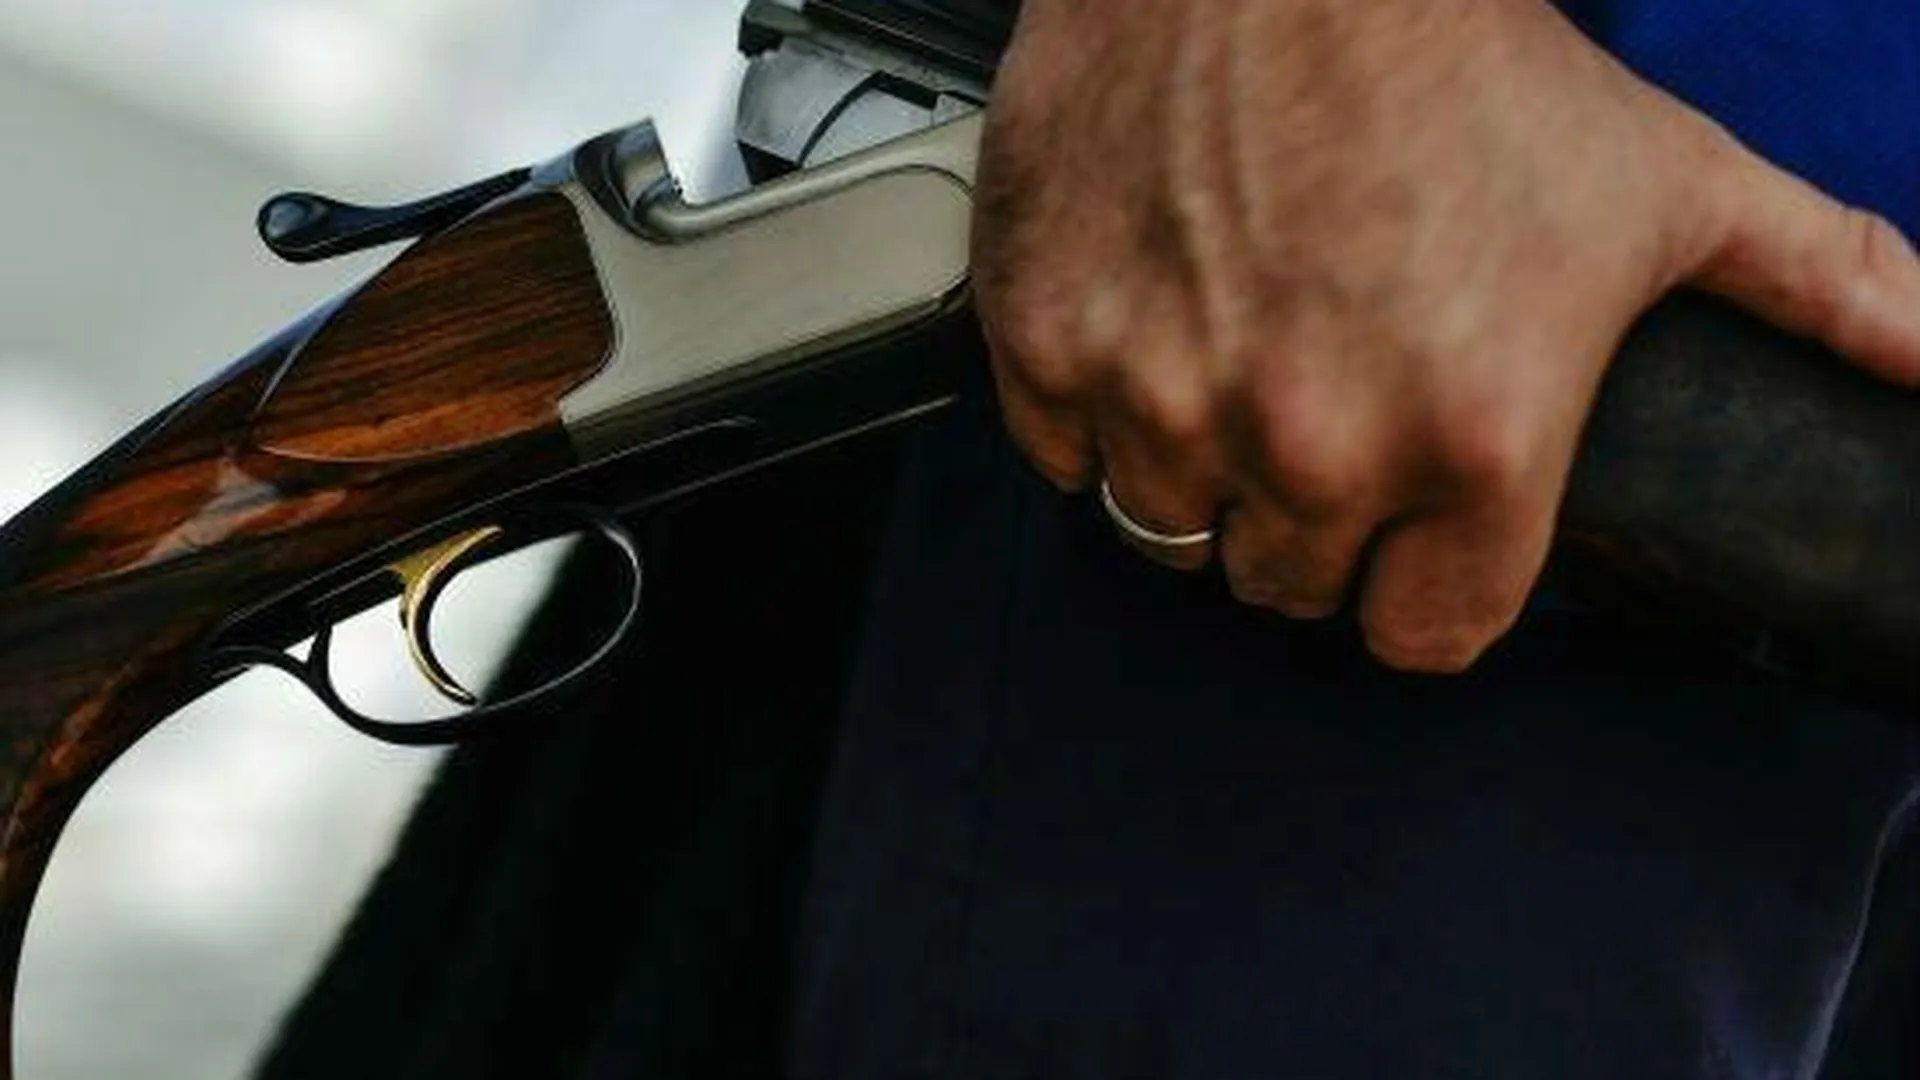 Автомат и револьвер нашли у мужчины на востоке Москвы